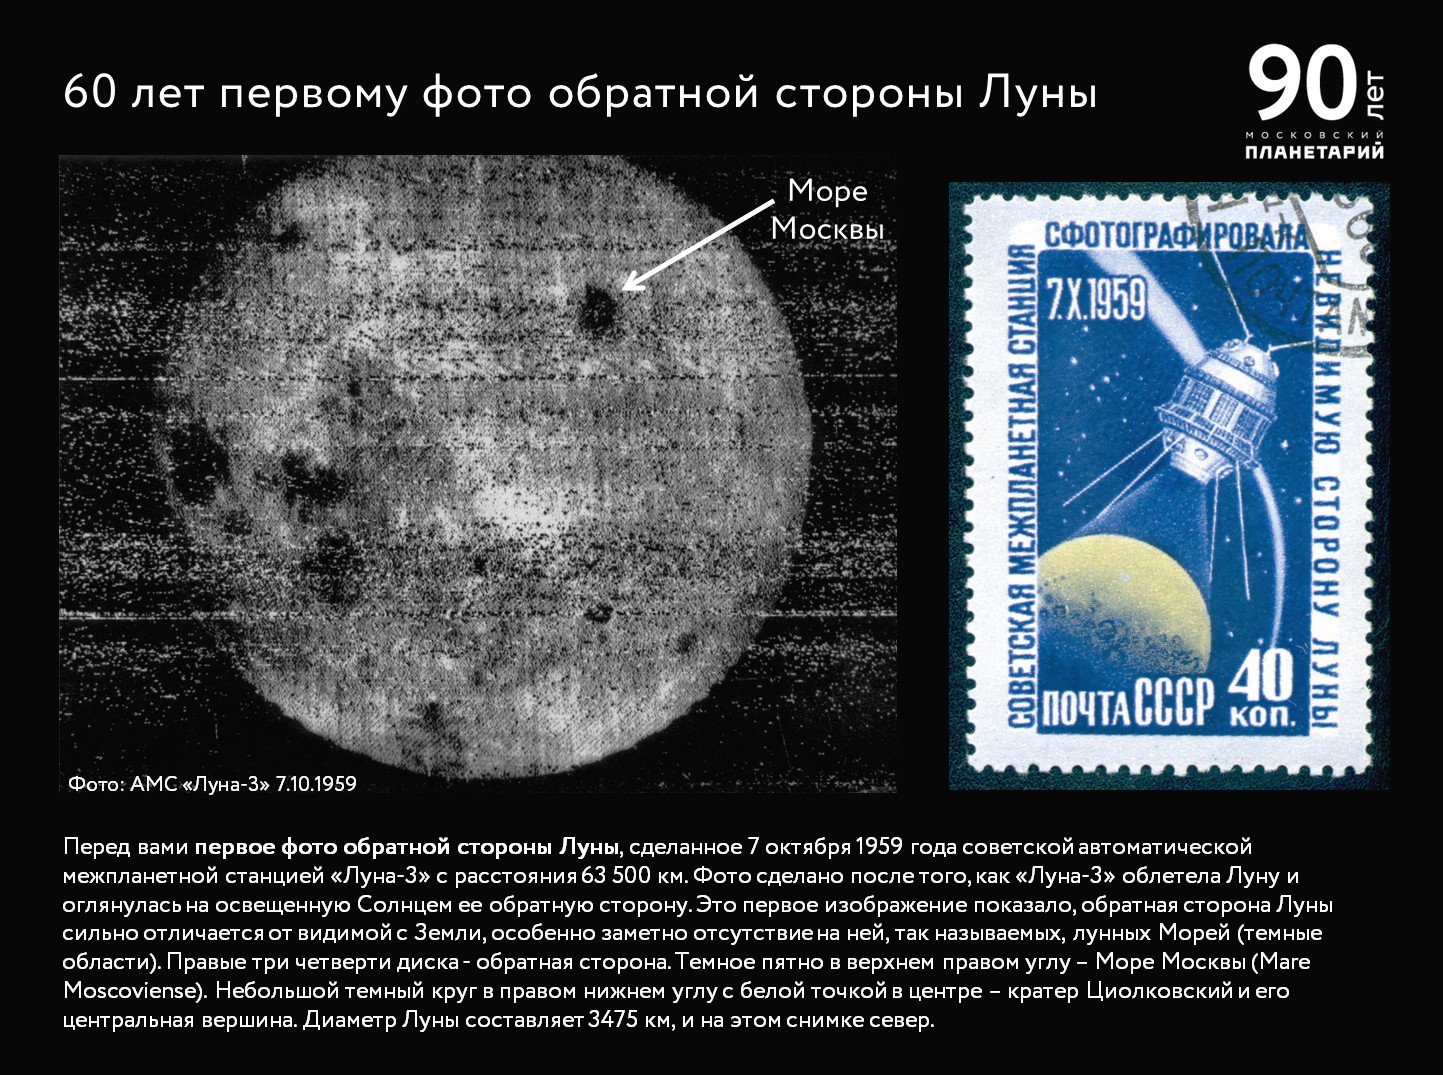 Первое изображение обратной стороны Луны Луна-3 1959 год